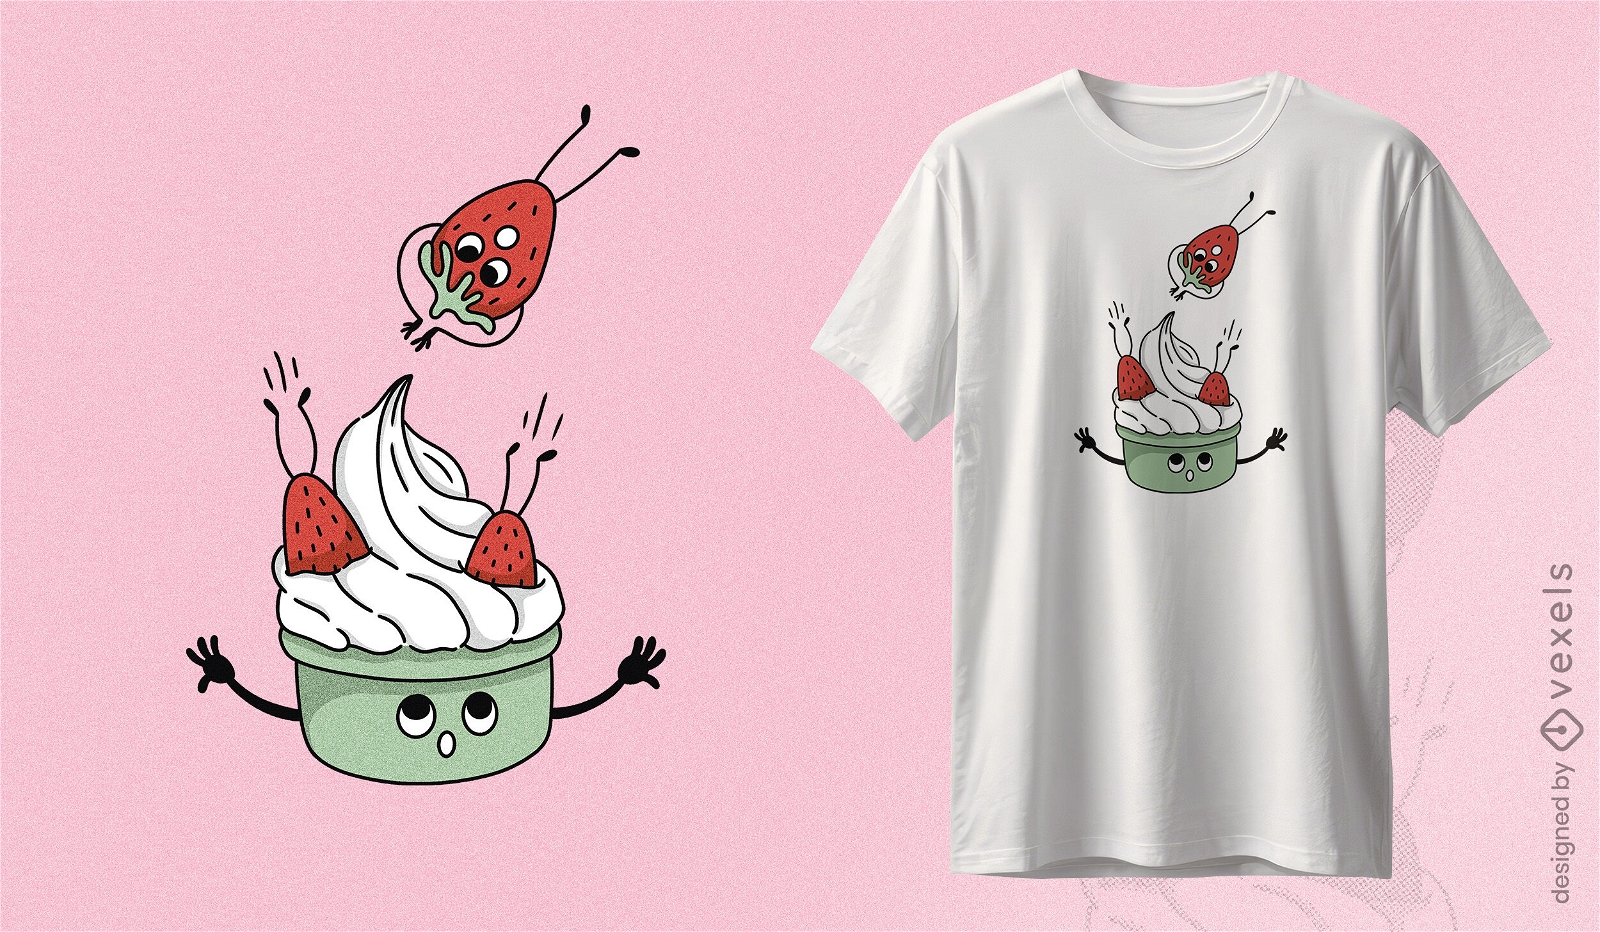 Verspieltes T-Shirt-Design mit Erdbeeren und Sahne. Skurriles T-Shirt-Design mit fröhlichen Erdbeeren, die mit verspieltem Gesichtsausdruck zu einer Schüssel Sahne springen.